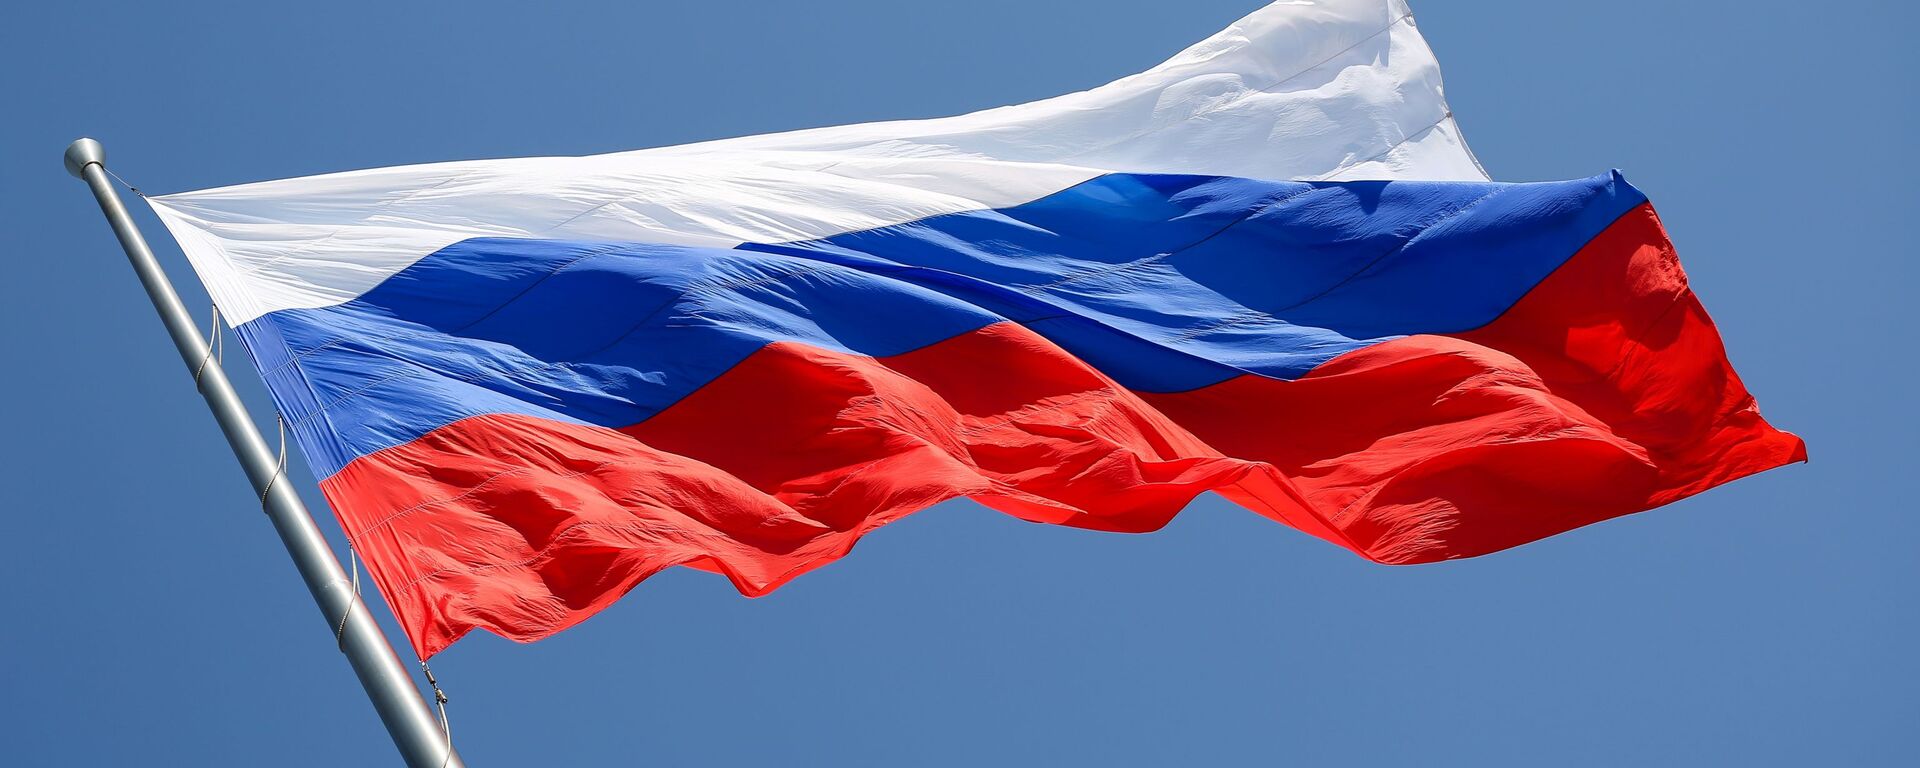 La bandera de la Federación de Rusia  - Sputnik Mundo, 1920, 19.03.2021